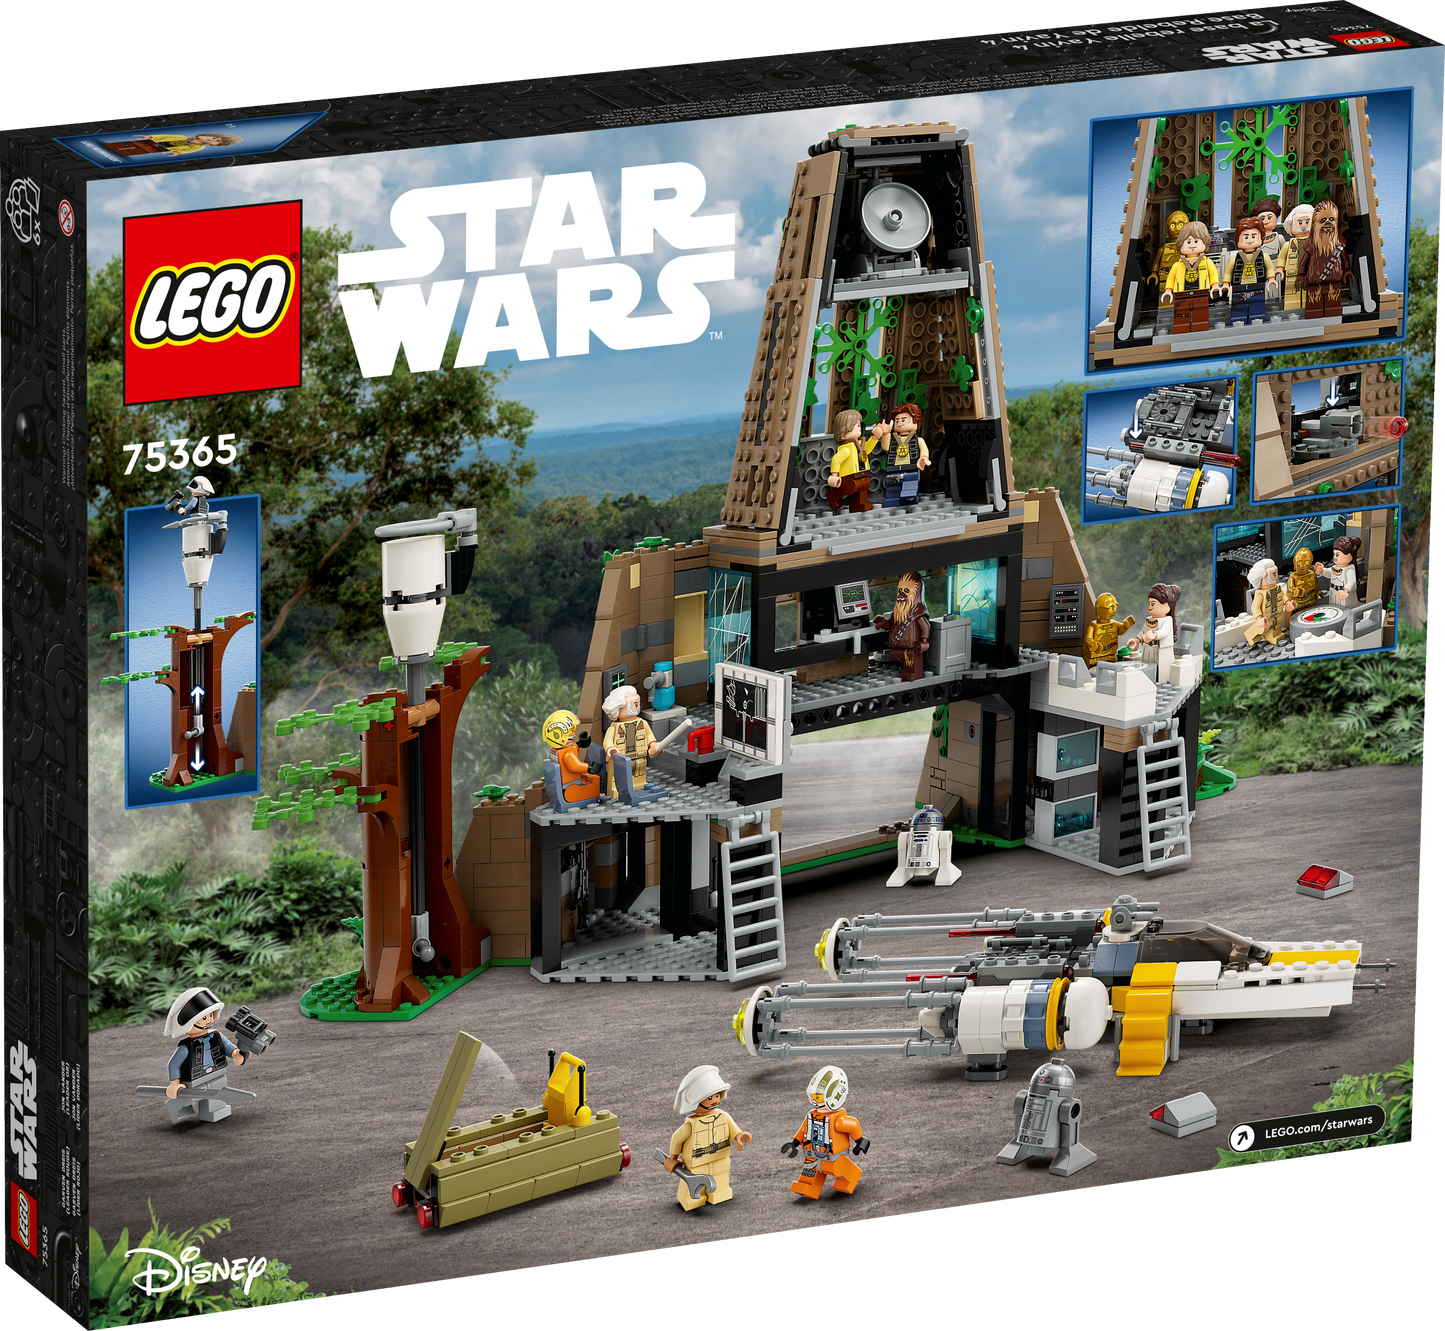 Yavin 4 Rebel base LEGO 75365